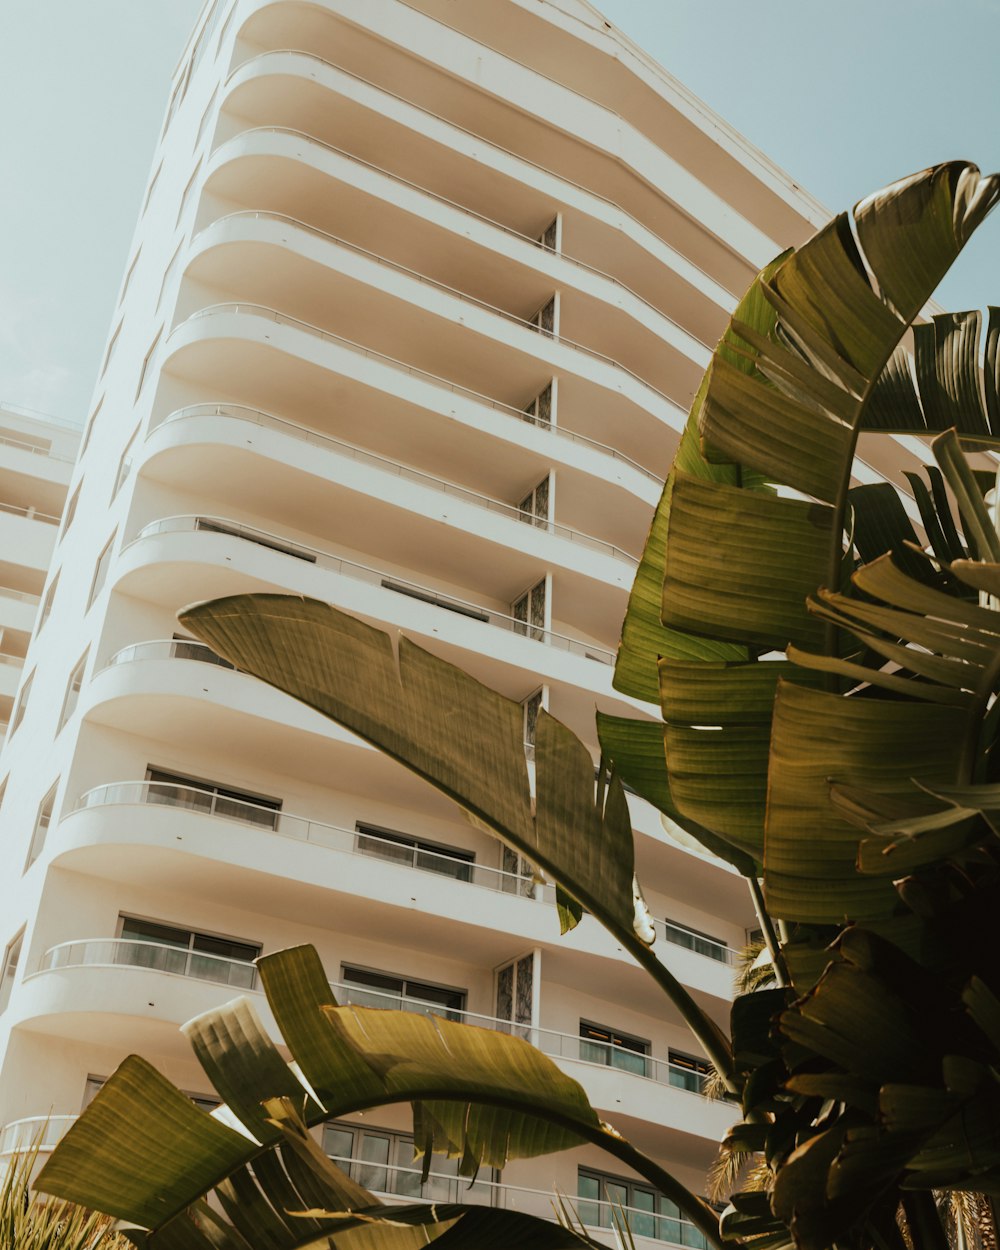 Palmier voyageur vert devant un immeuble d’habitation blanc de grande hauteur